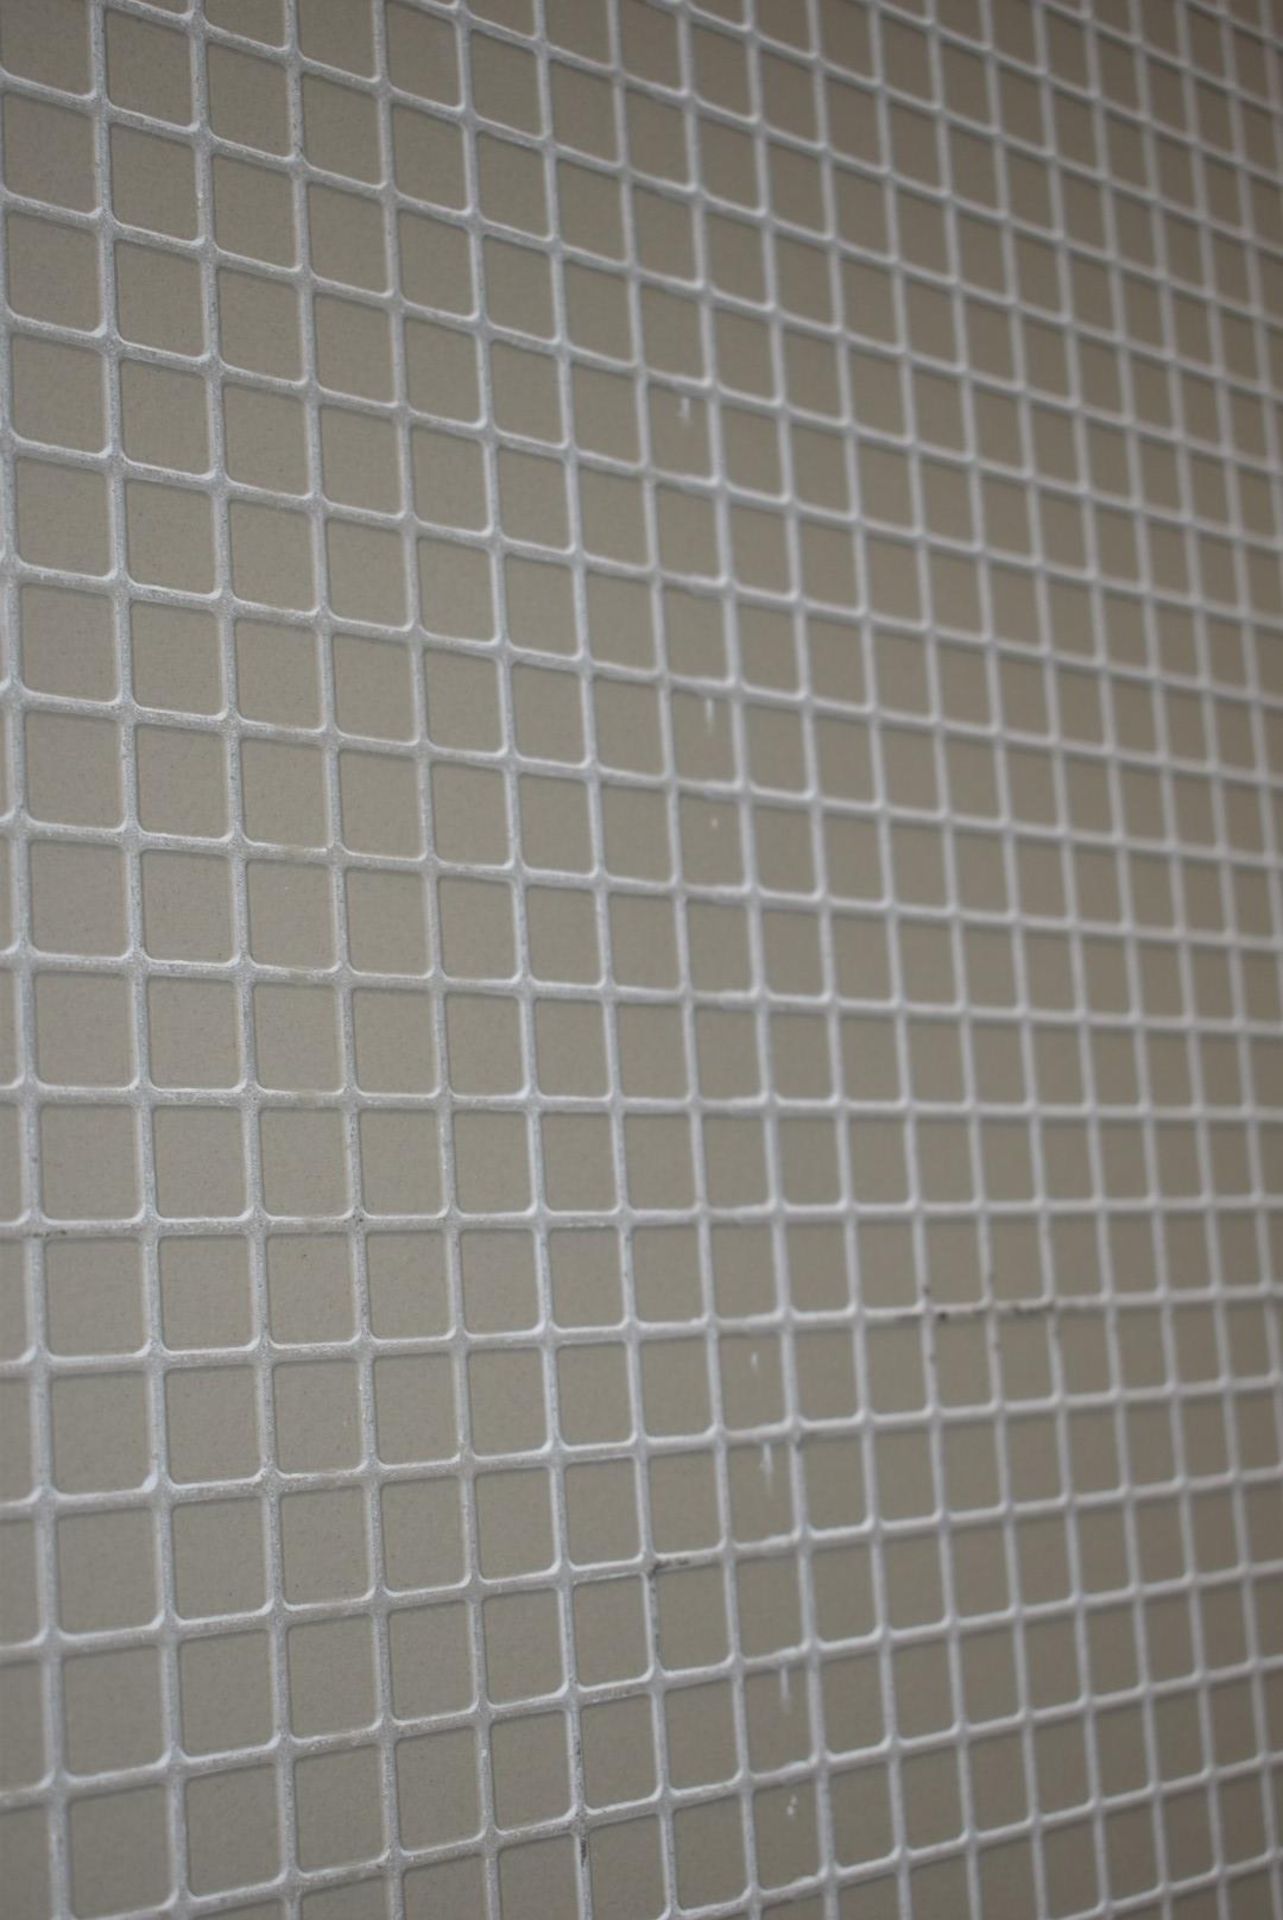 12 x Boxes of RAK Porcelain Tiles - Design Concrete Range - Sand Colour Matt Finish - Size: 120x60cm - Image 8 of 12